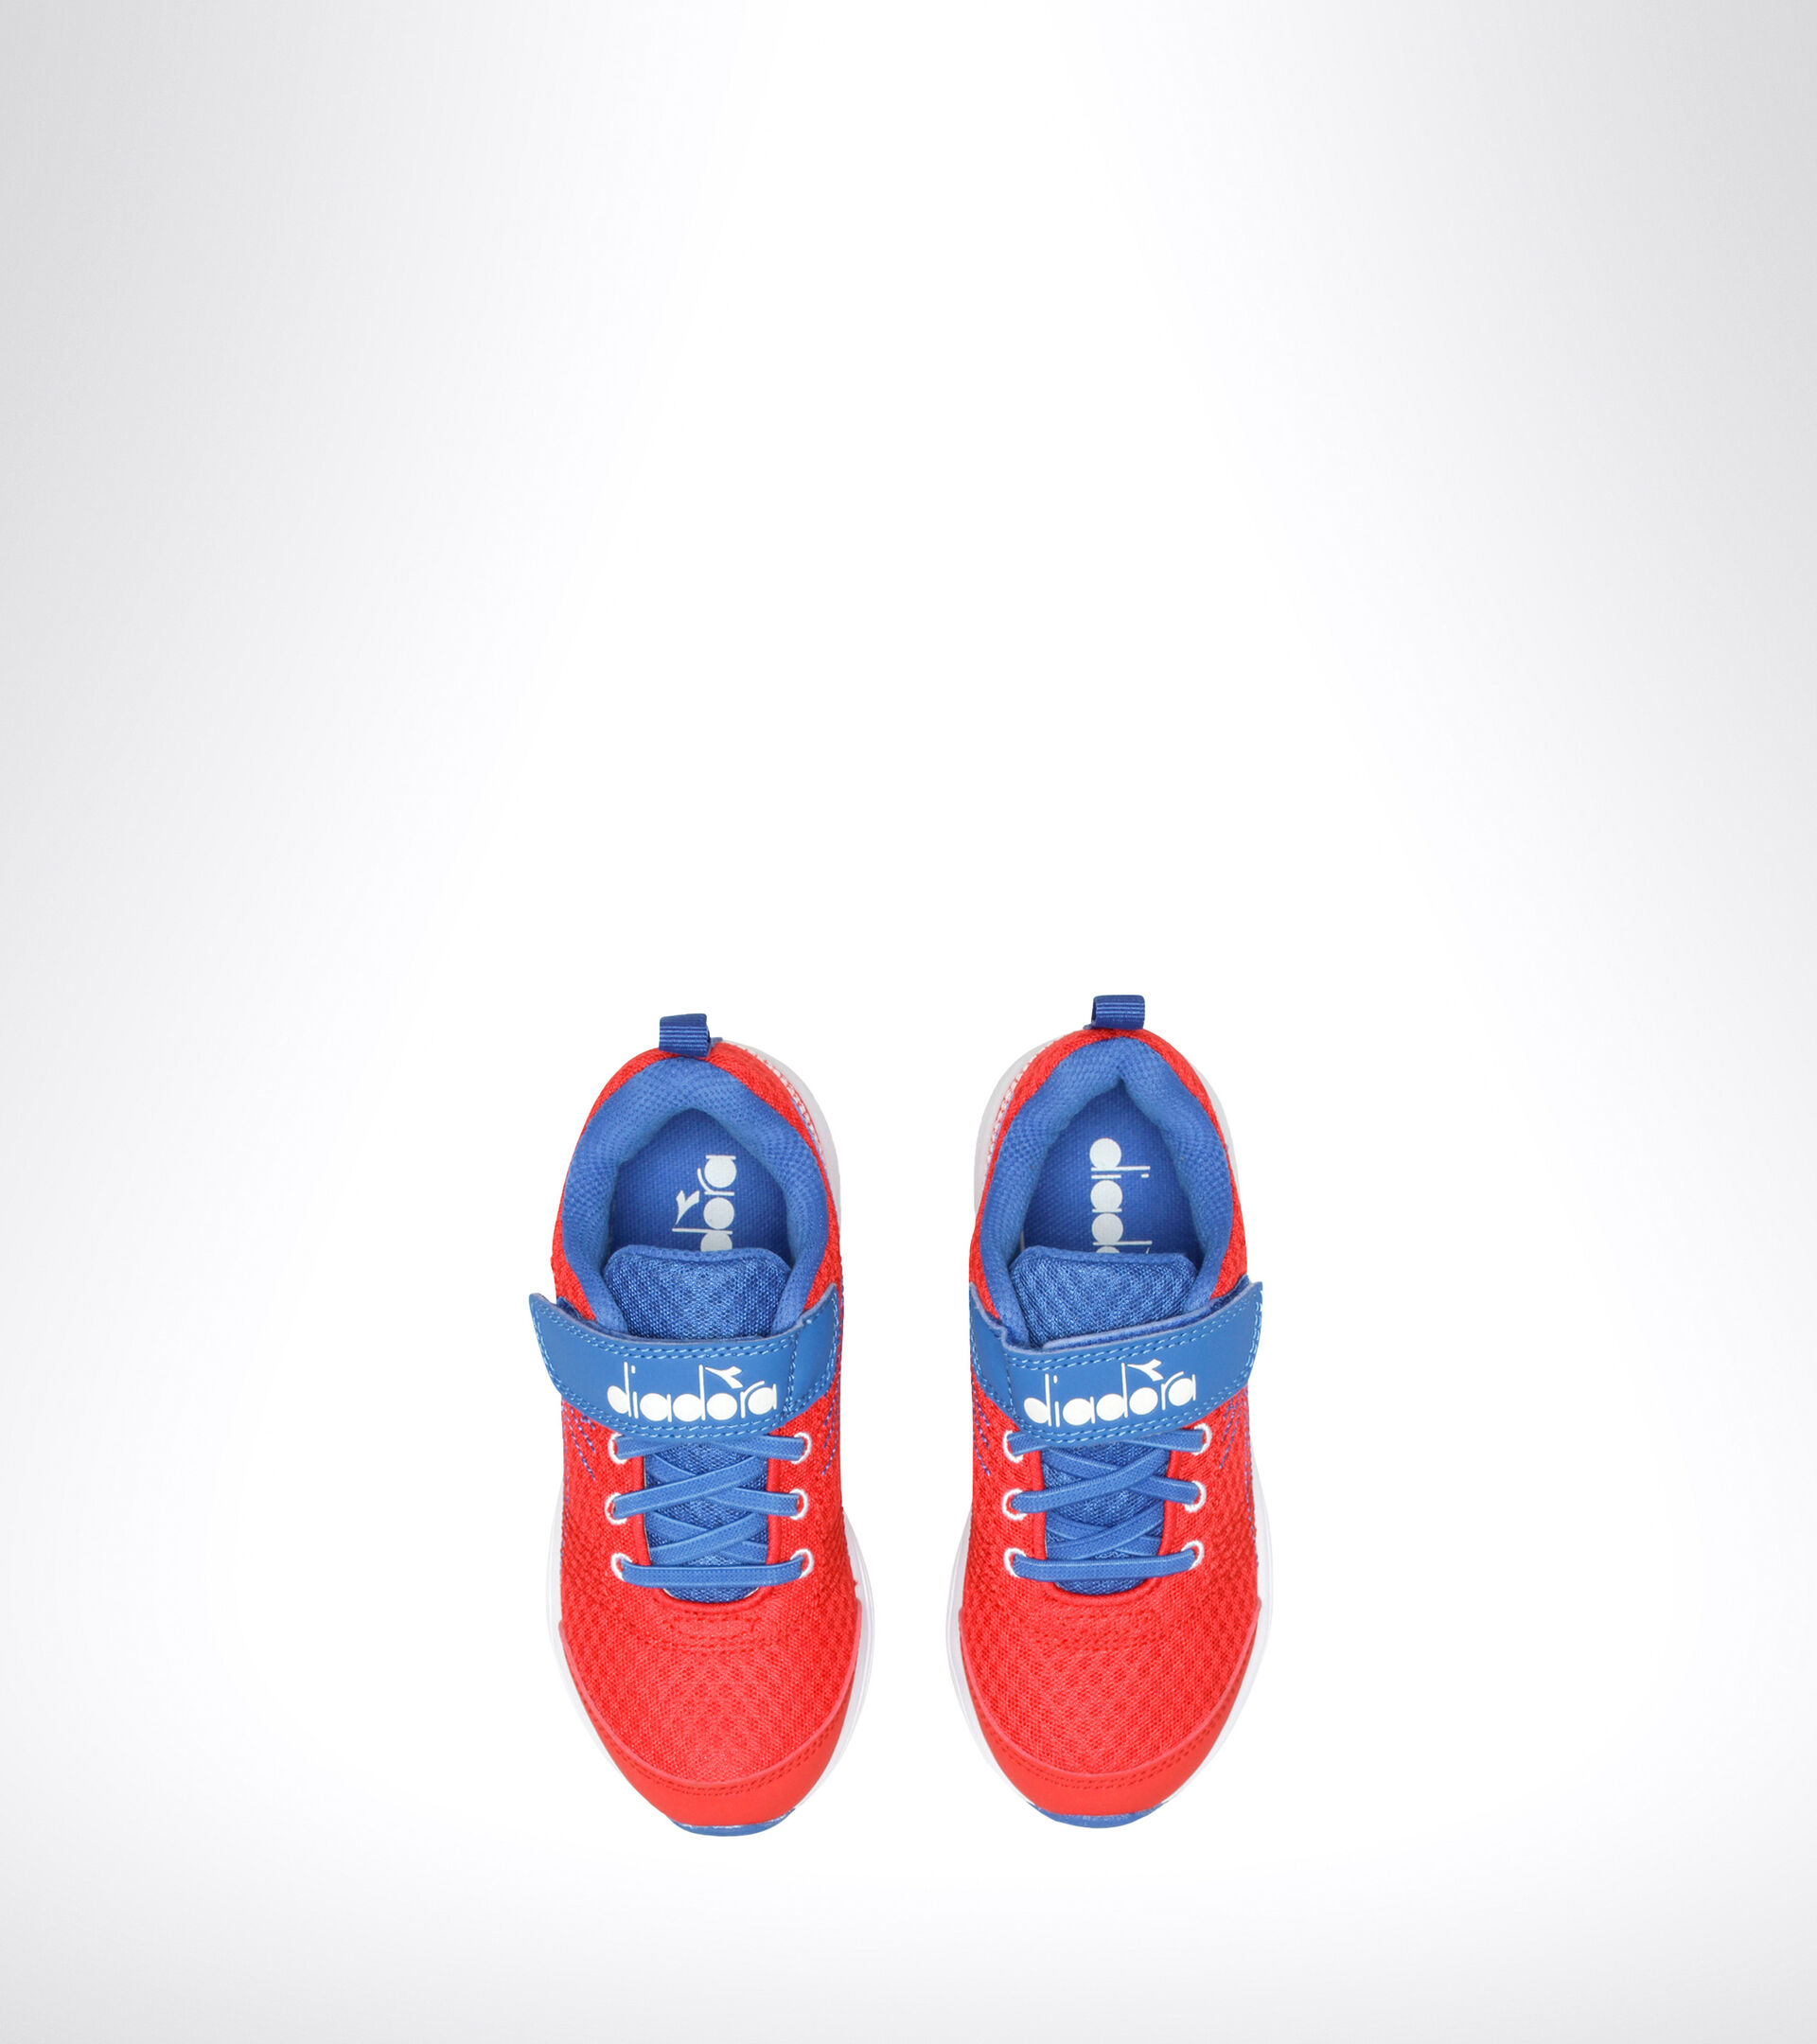 Chaussures de running - Unisexe enfant FLAMINGO 6 JR ROUGE FONCE/IMPERIAL BLEU/BLC - Diadora